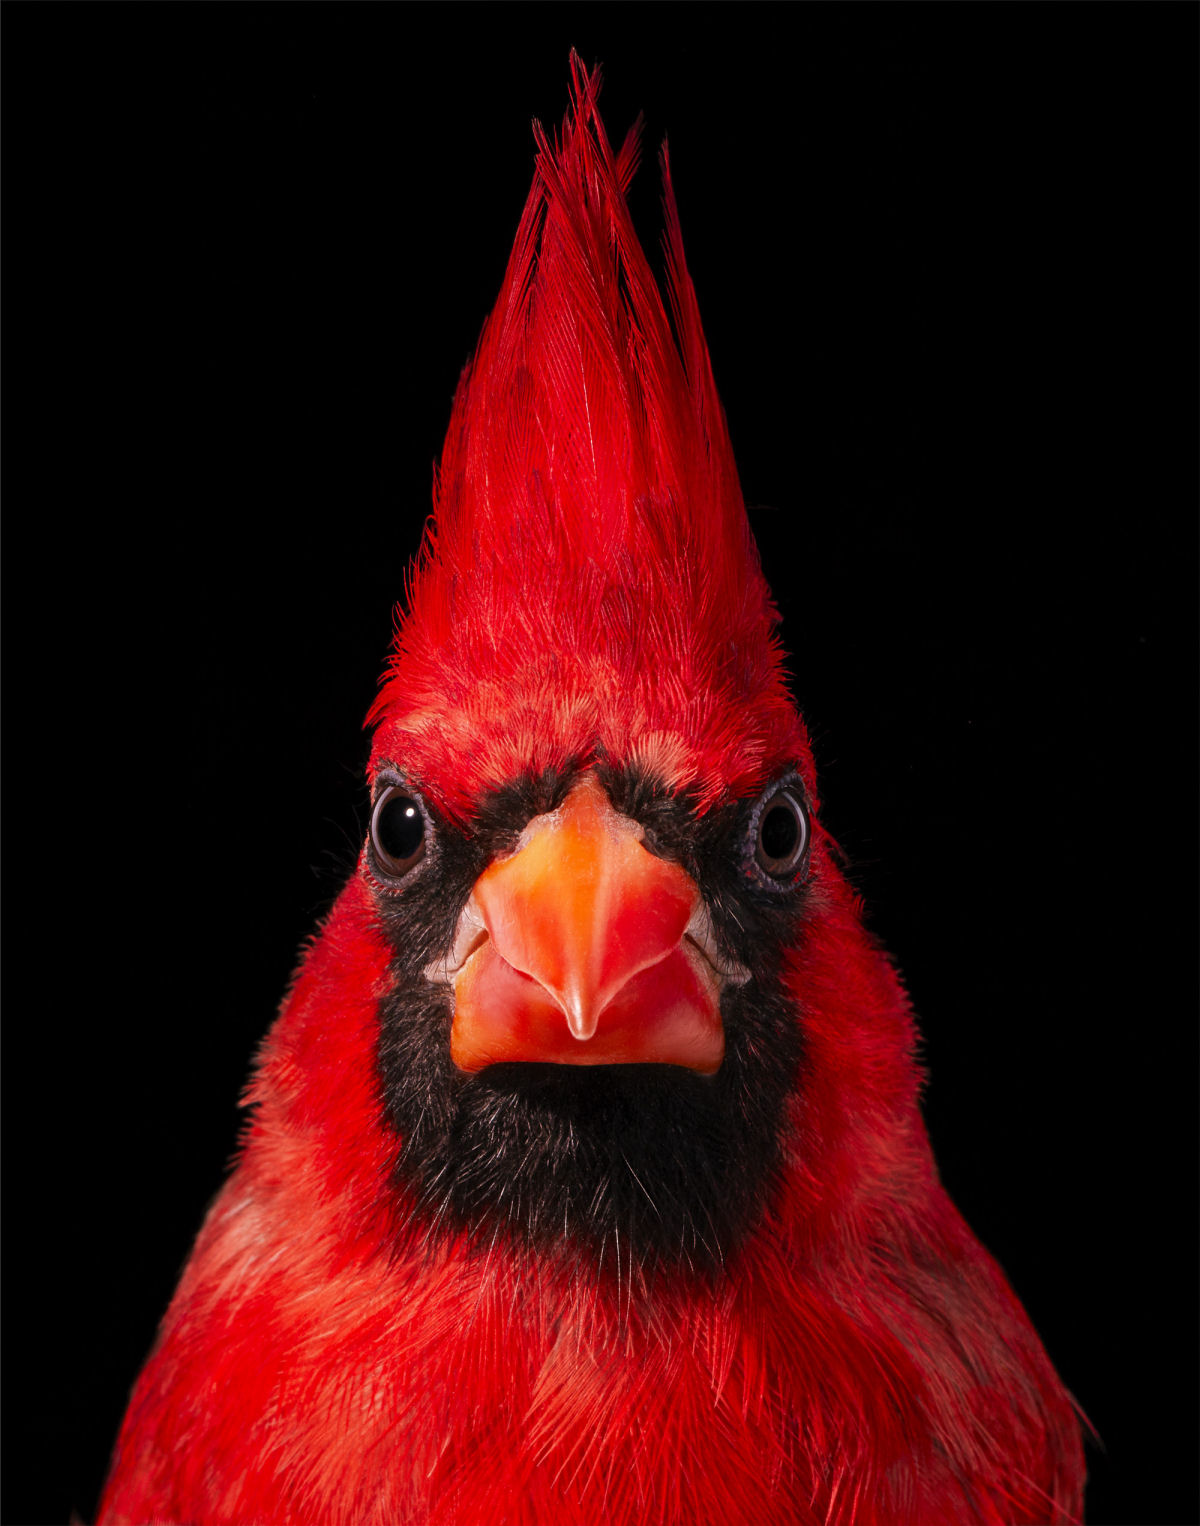 Fotógrafo londrino destaca pássaros incomuns e ameaçados de extinção em retratos impressionantes 03